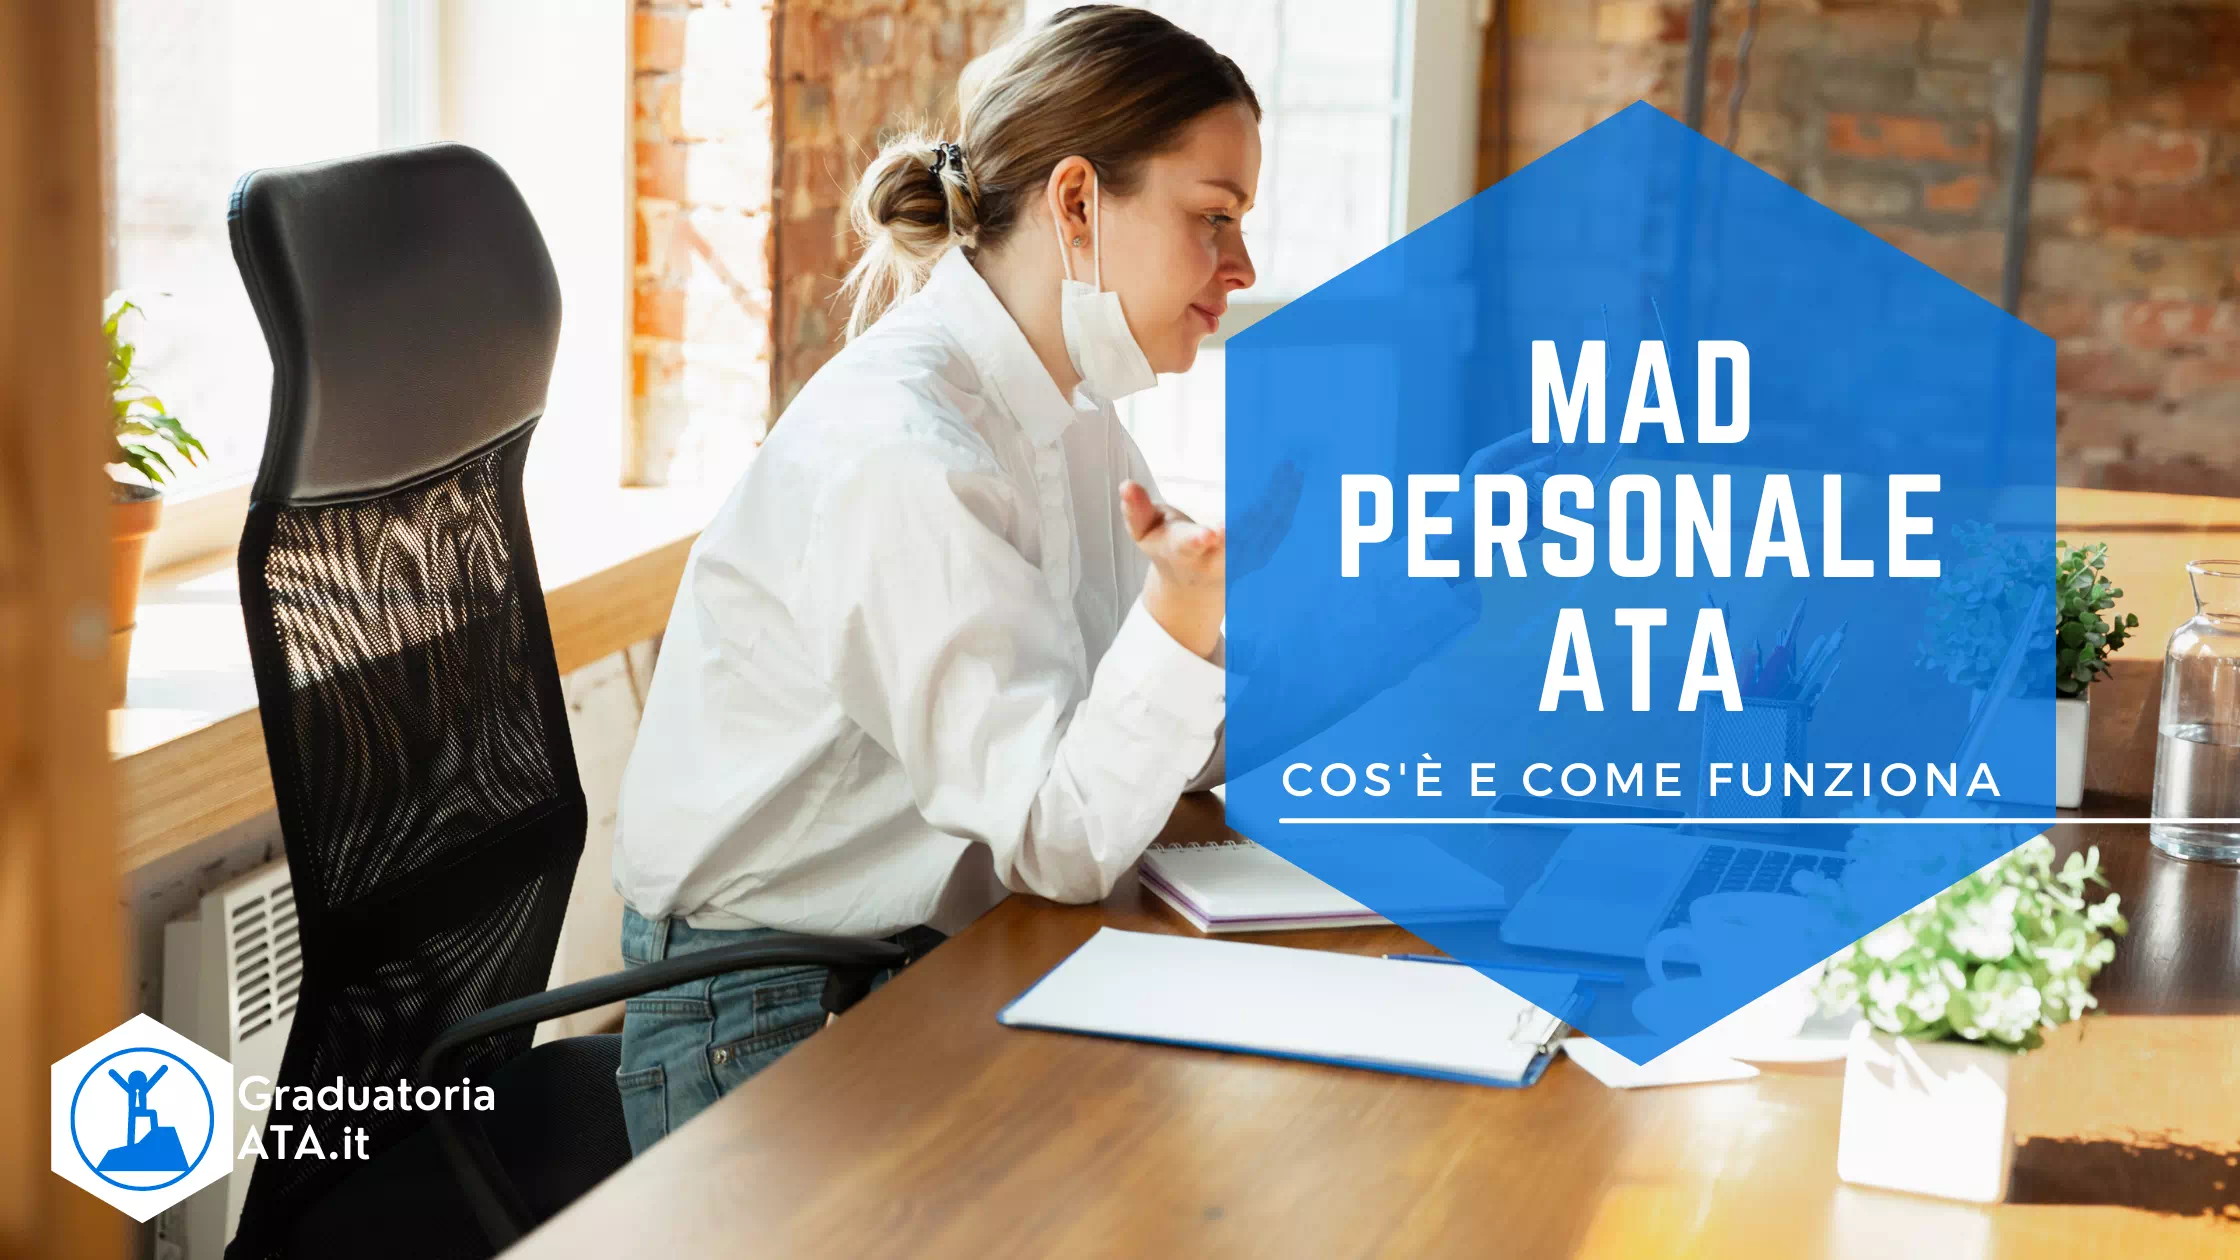 MAD Personale ATA: Cos’è e Come Funziona